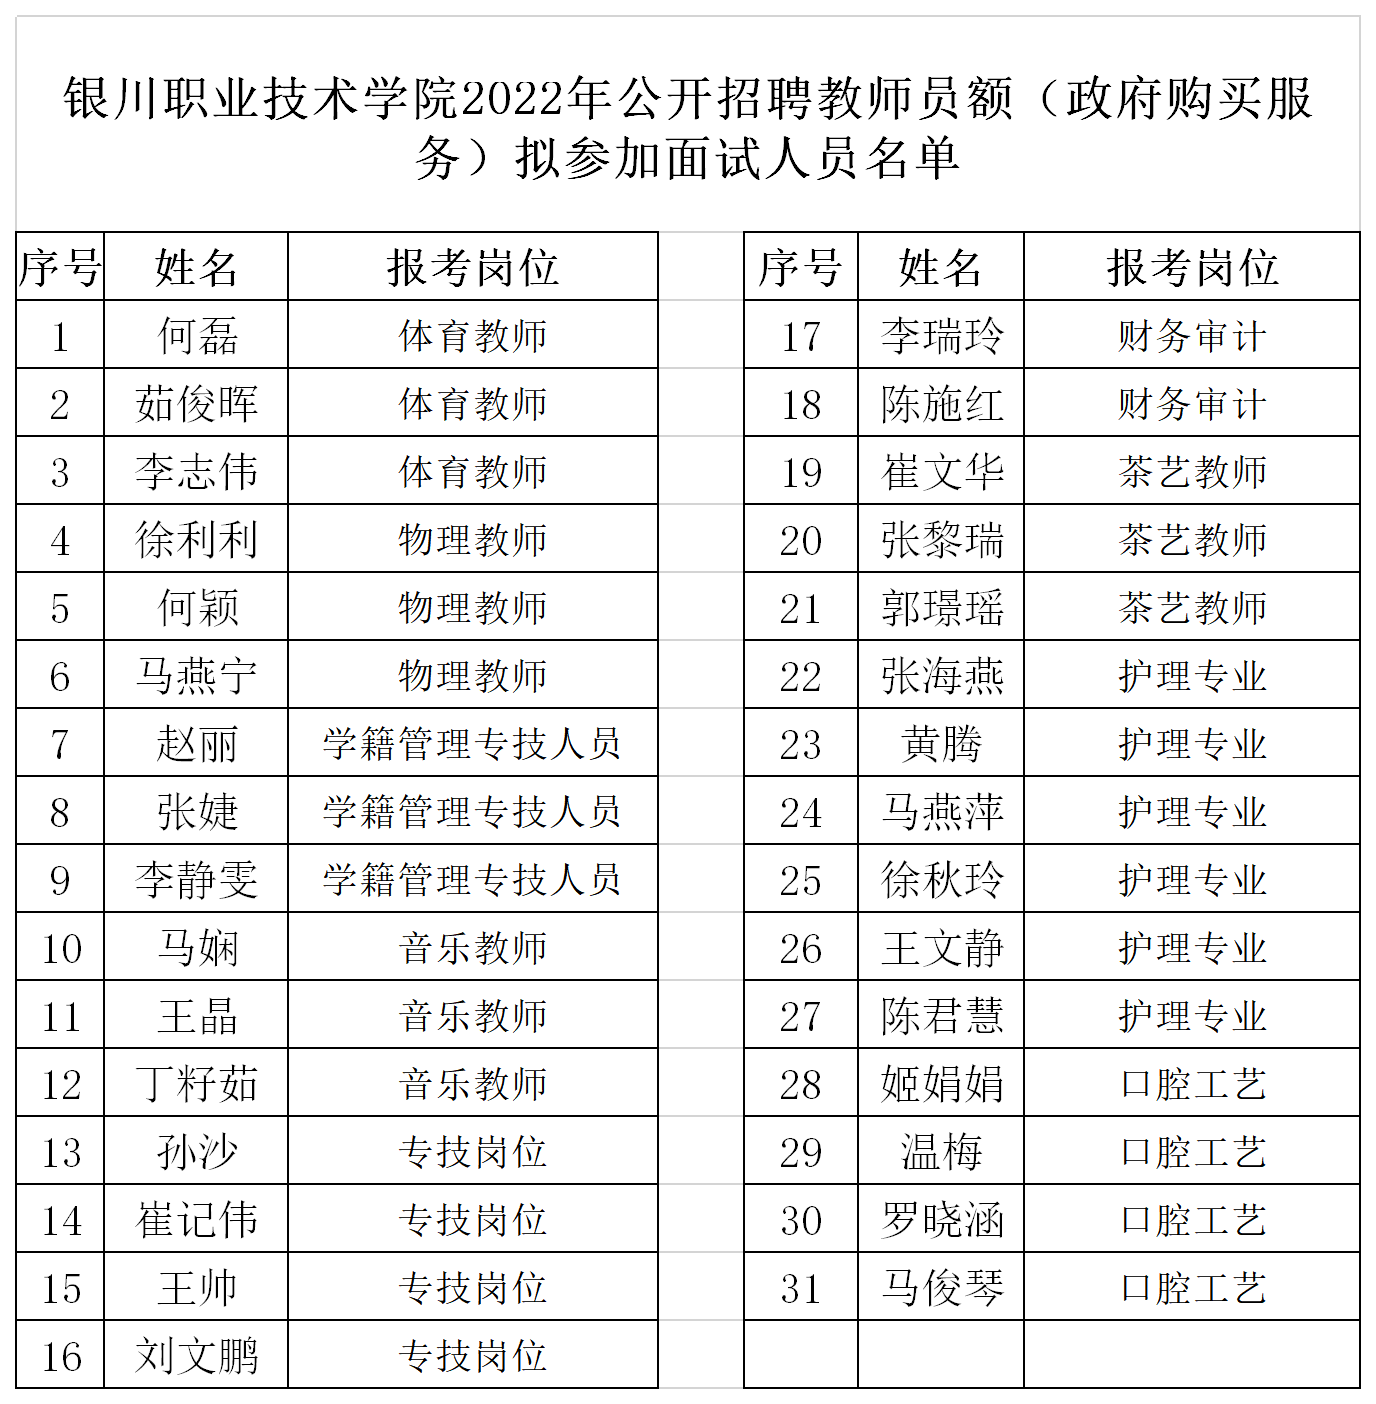 银川公示10名拟任用干部名单-搜狐